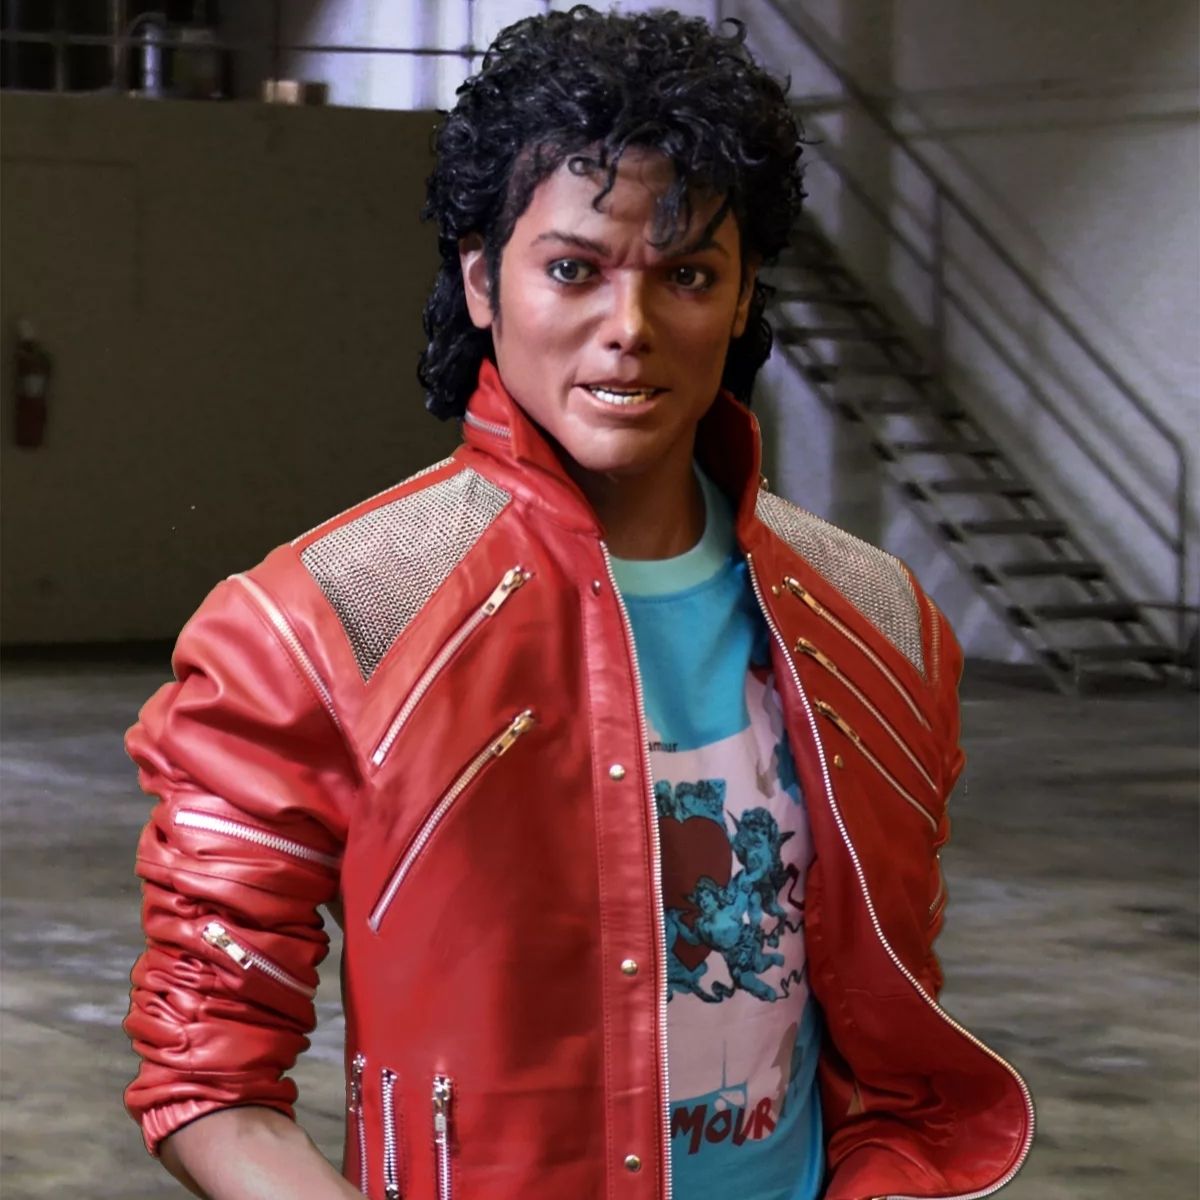 Michael Jackson sur le tournage du clip vidéo "beat it".